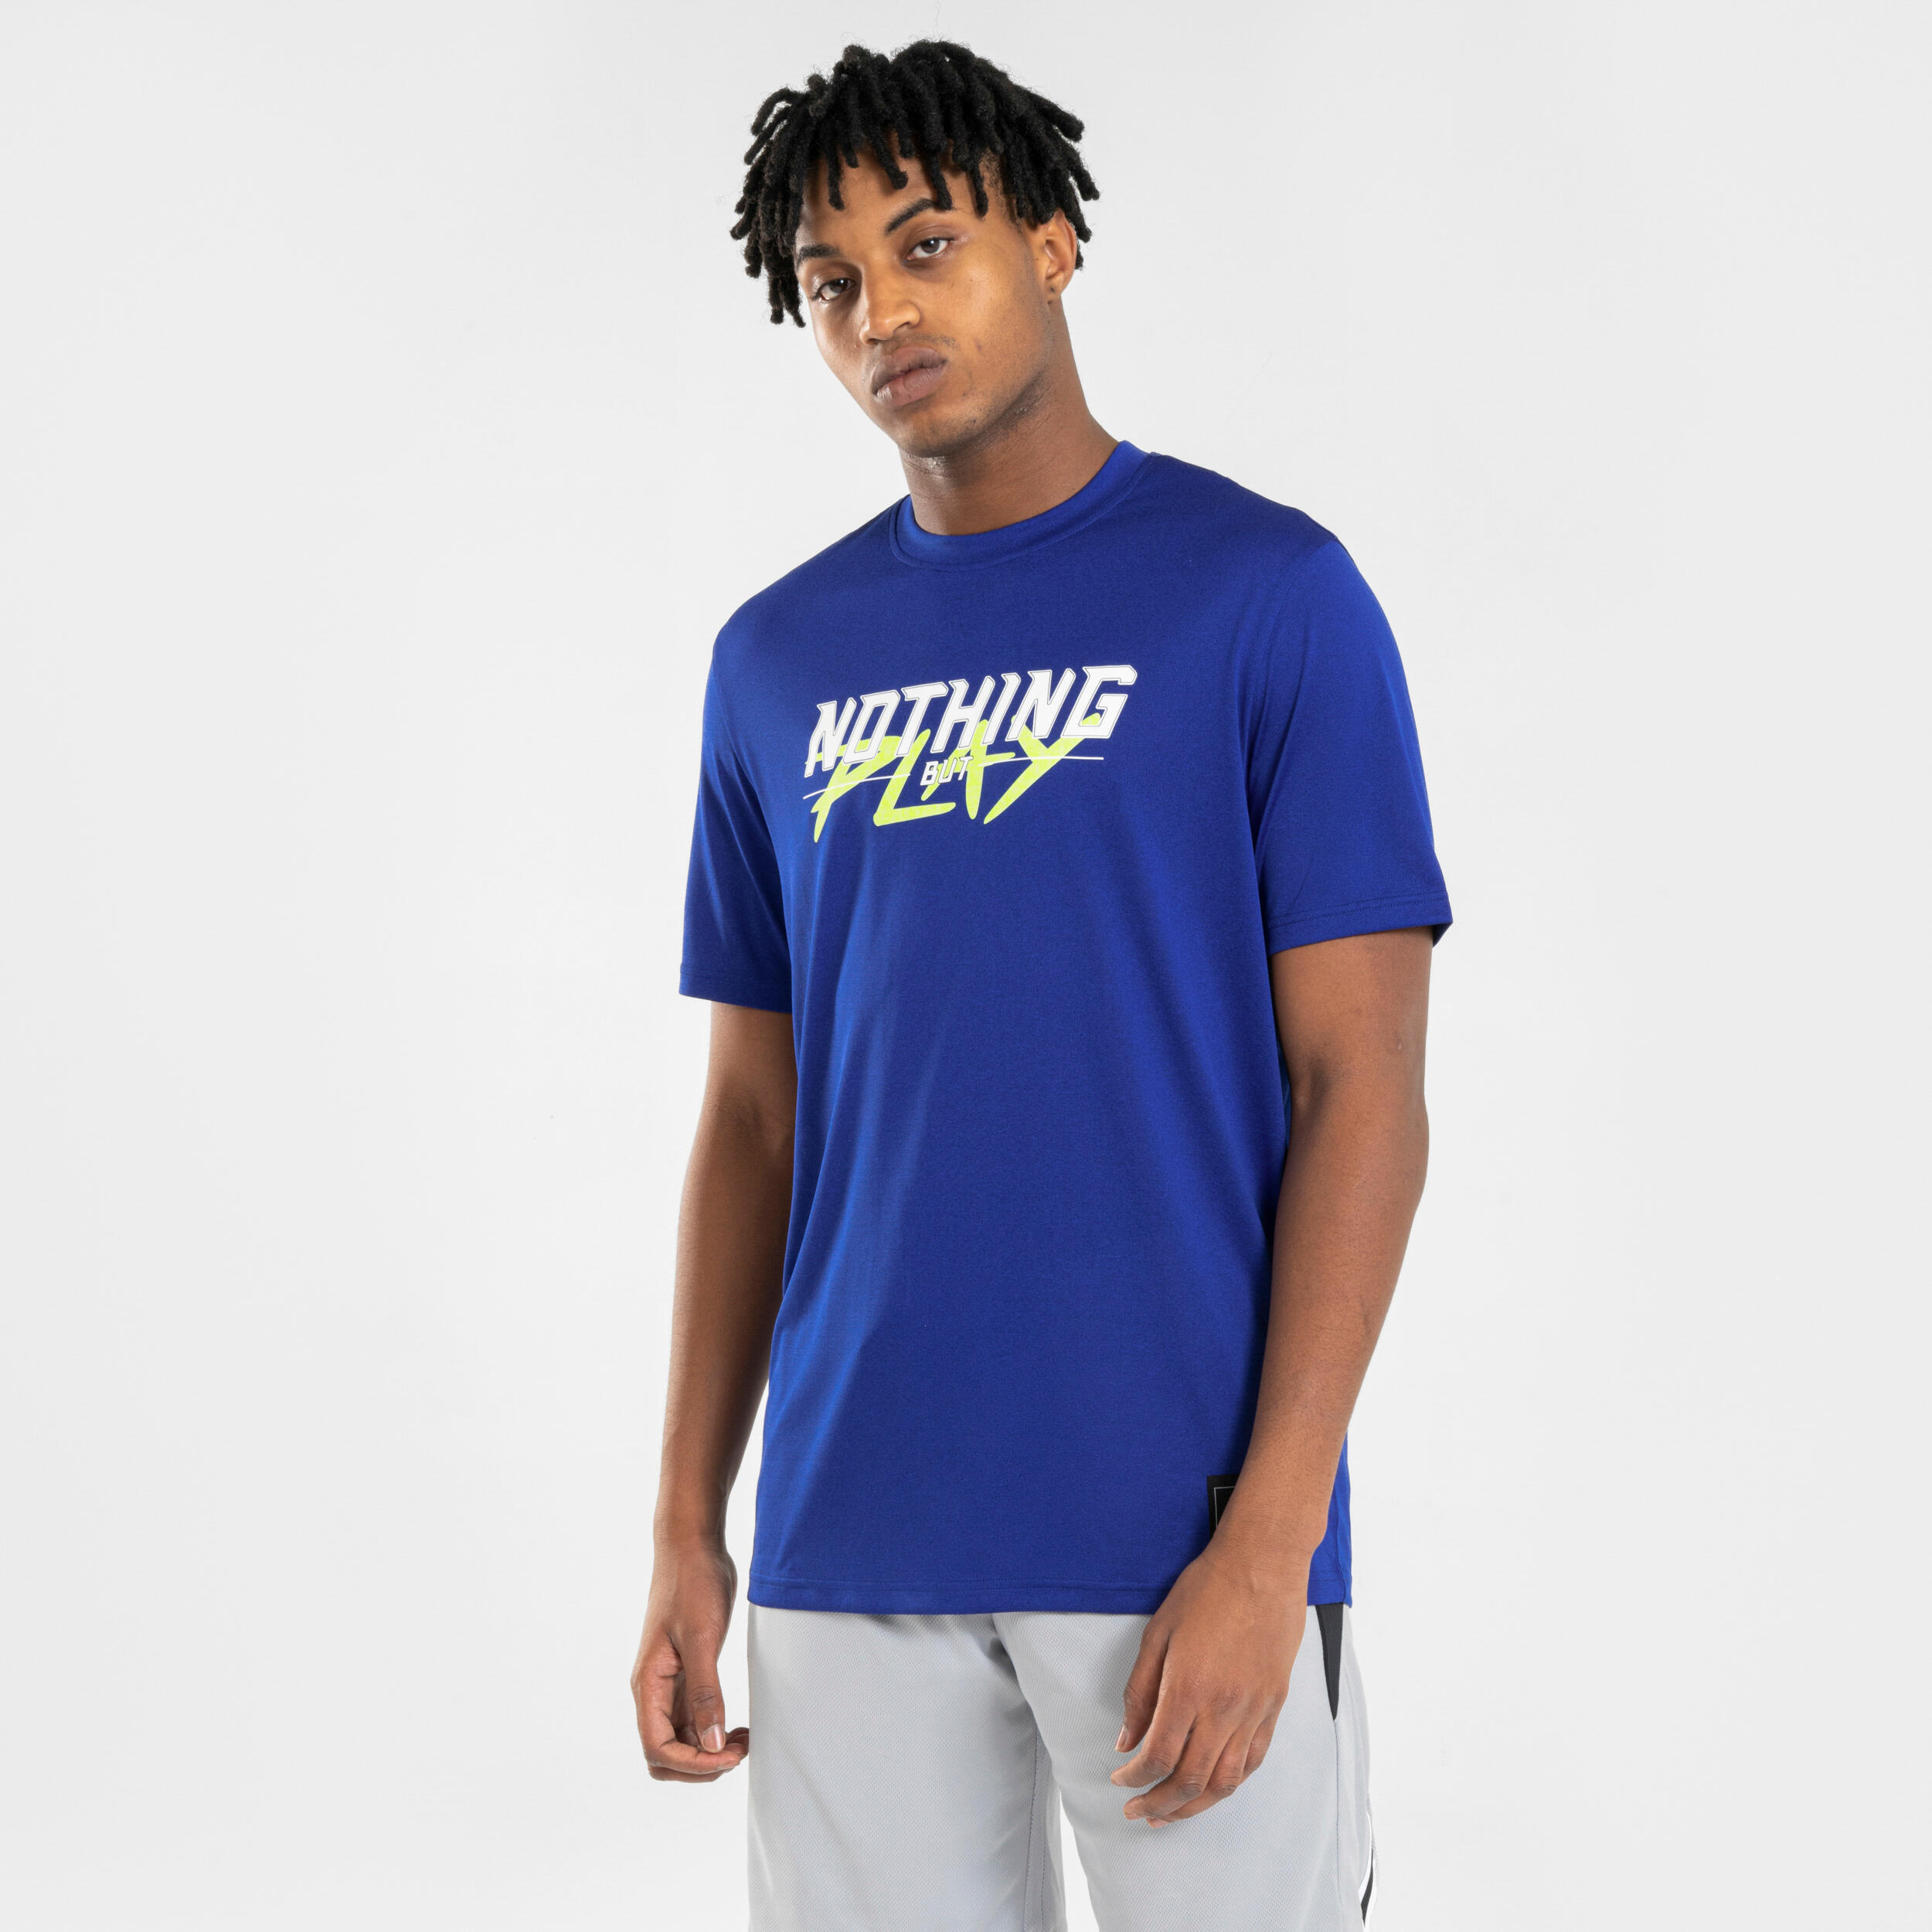 Men's/Women's Basketball T-Shirt/Jersey TS500 Fast - Blue 2/7